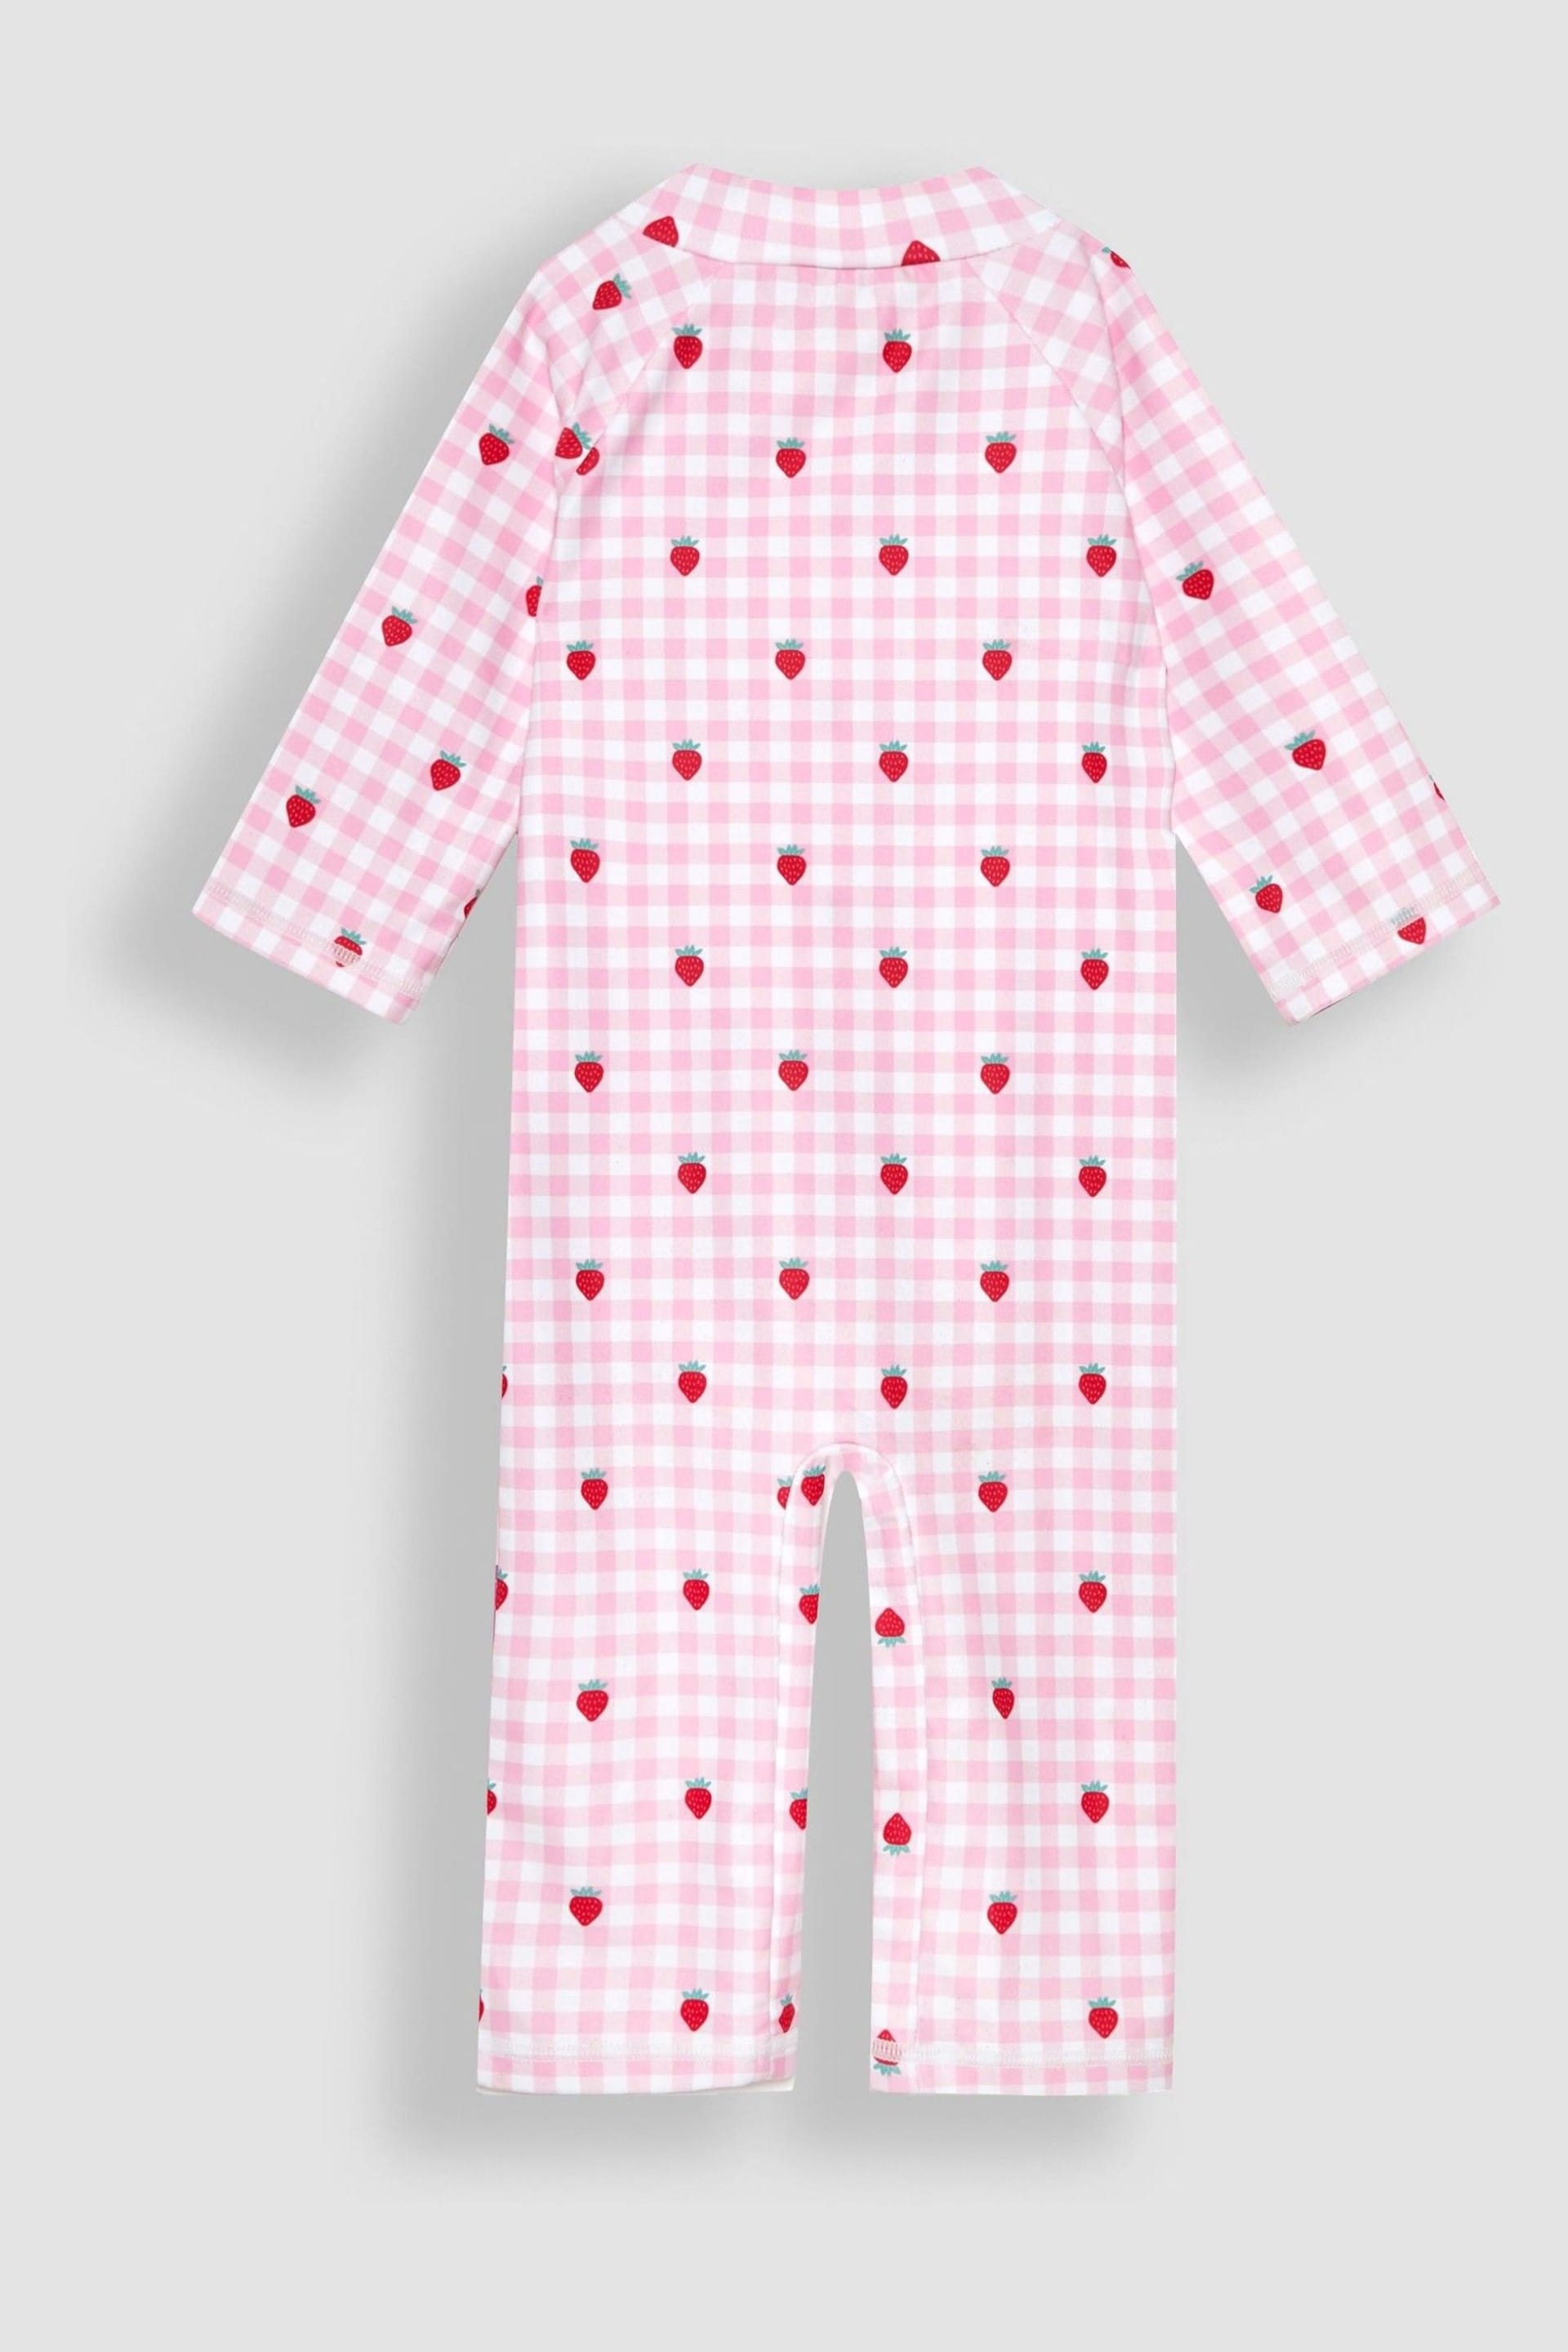 JoJo Maman Bébé Pink Gingham UPF 50 1-Piece Sun Protection Suit - Image 4 of 5